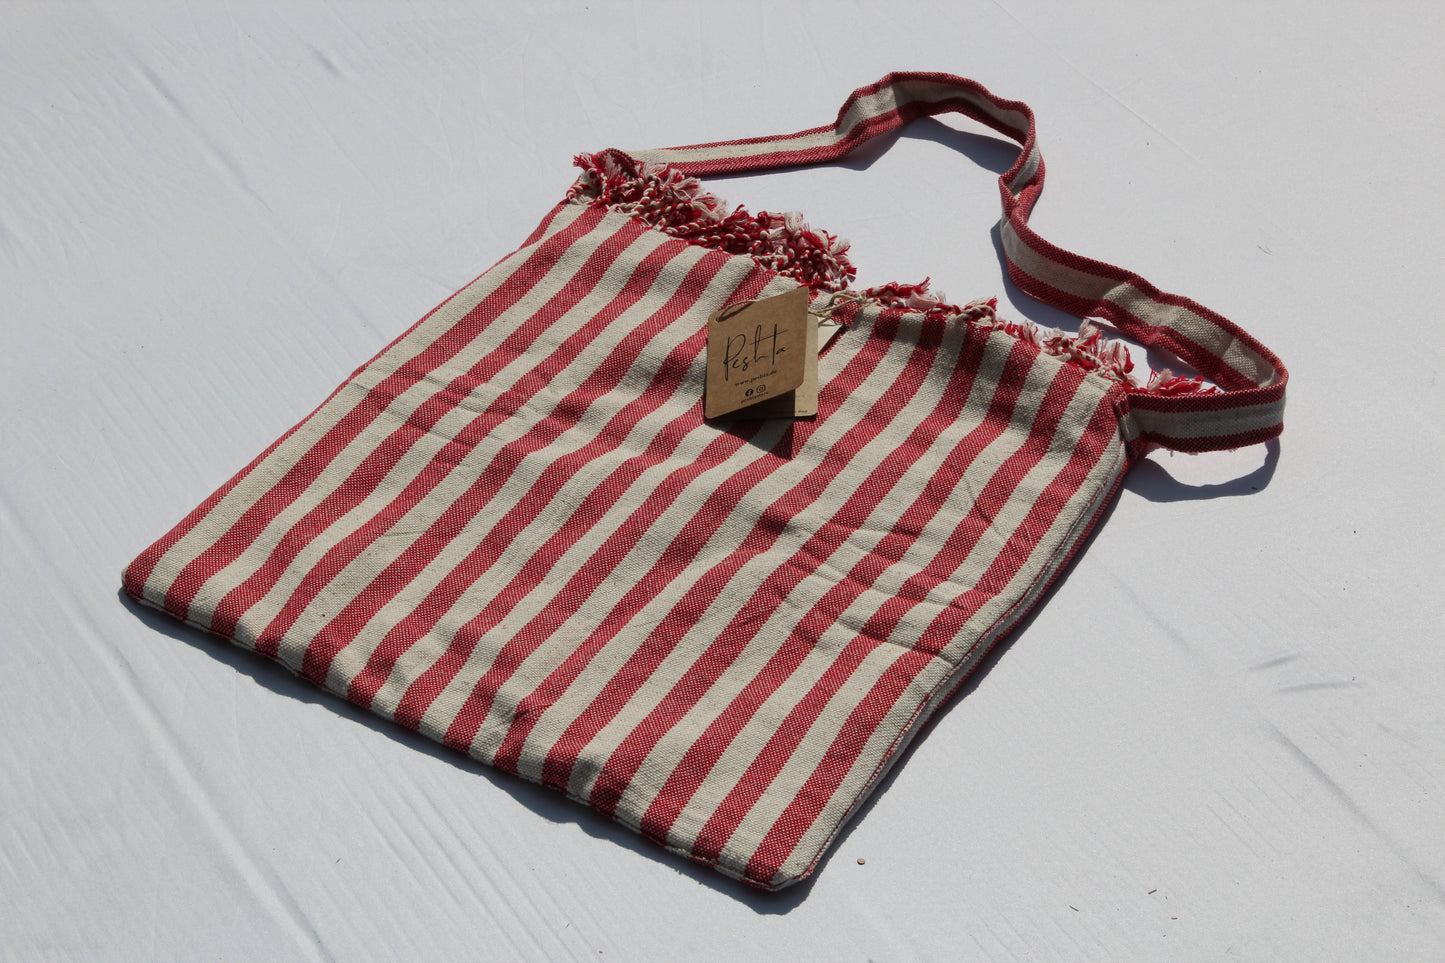 Rincon Hey Bag by Peshta. Eine Umhängetasche oder doch ein Strandtuch? Oder vielleicht auch eine Picknickdecke ... finde es selbst heraus! In 4 Farben.